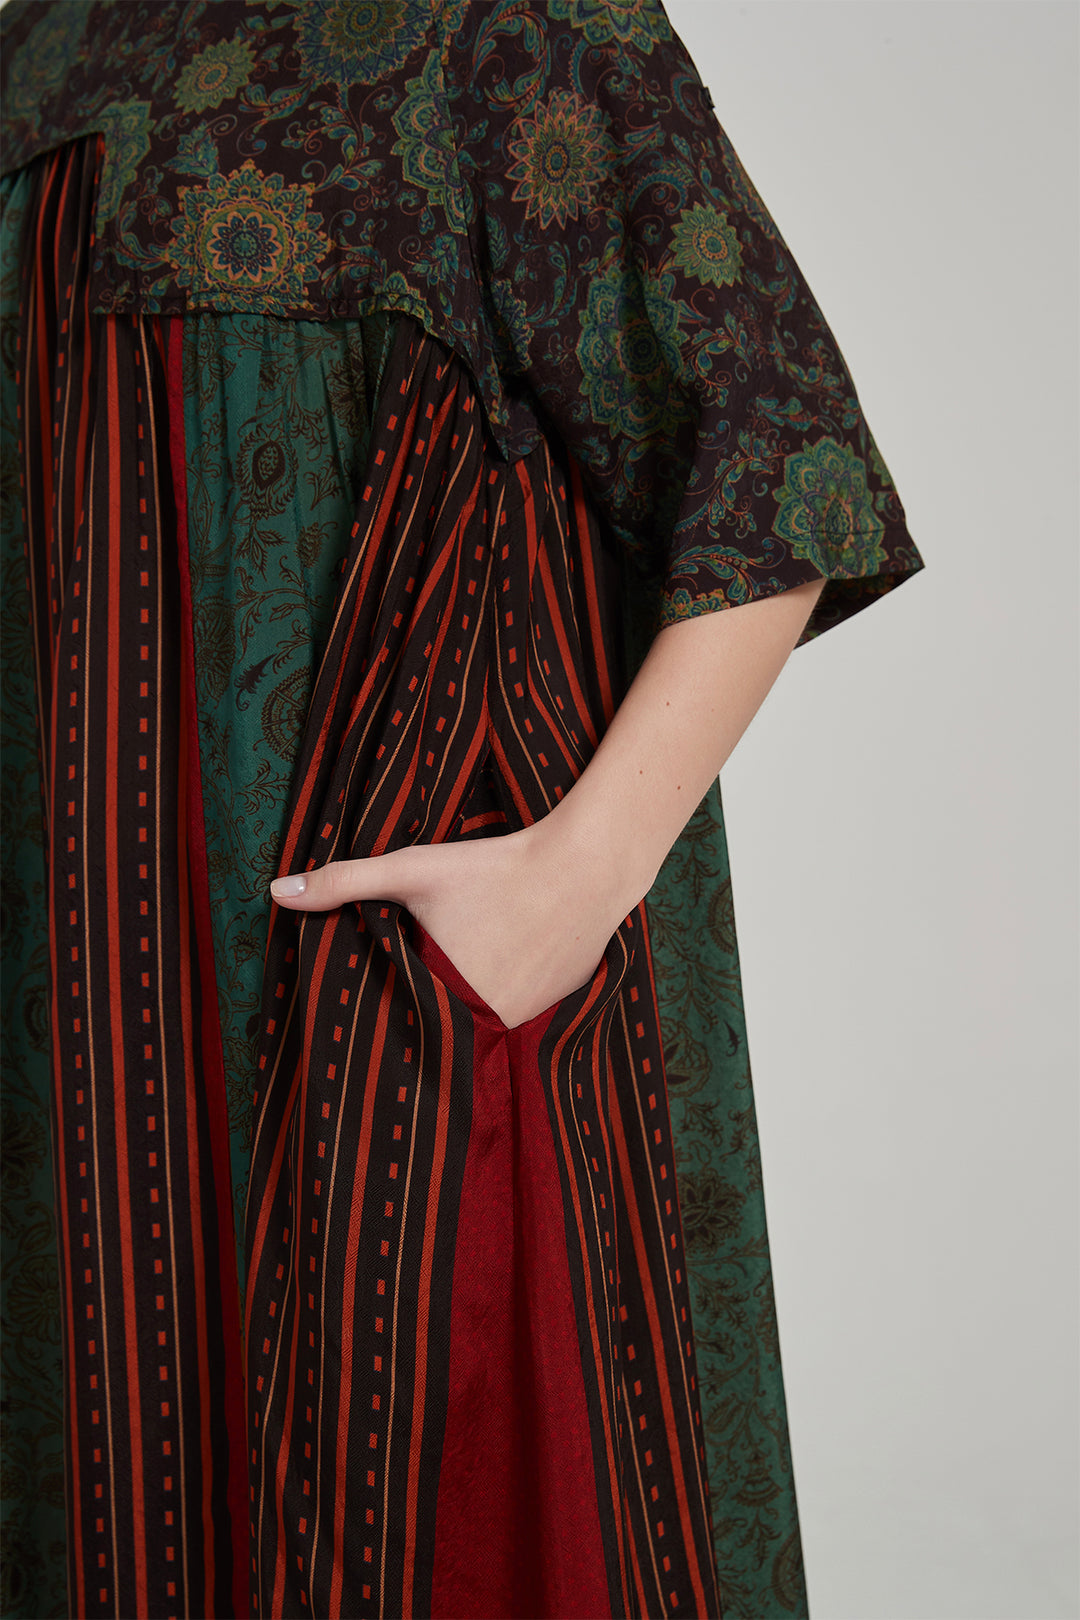 Vestido maxi de seda com estampa floral retrô